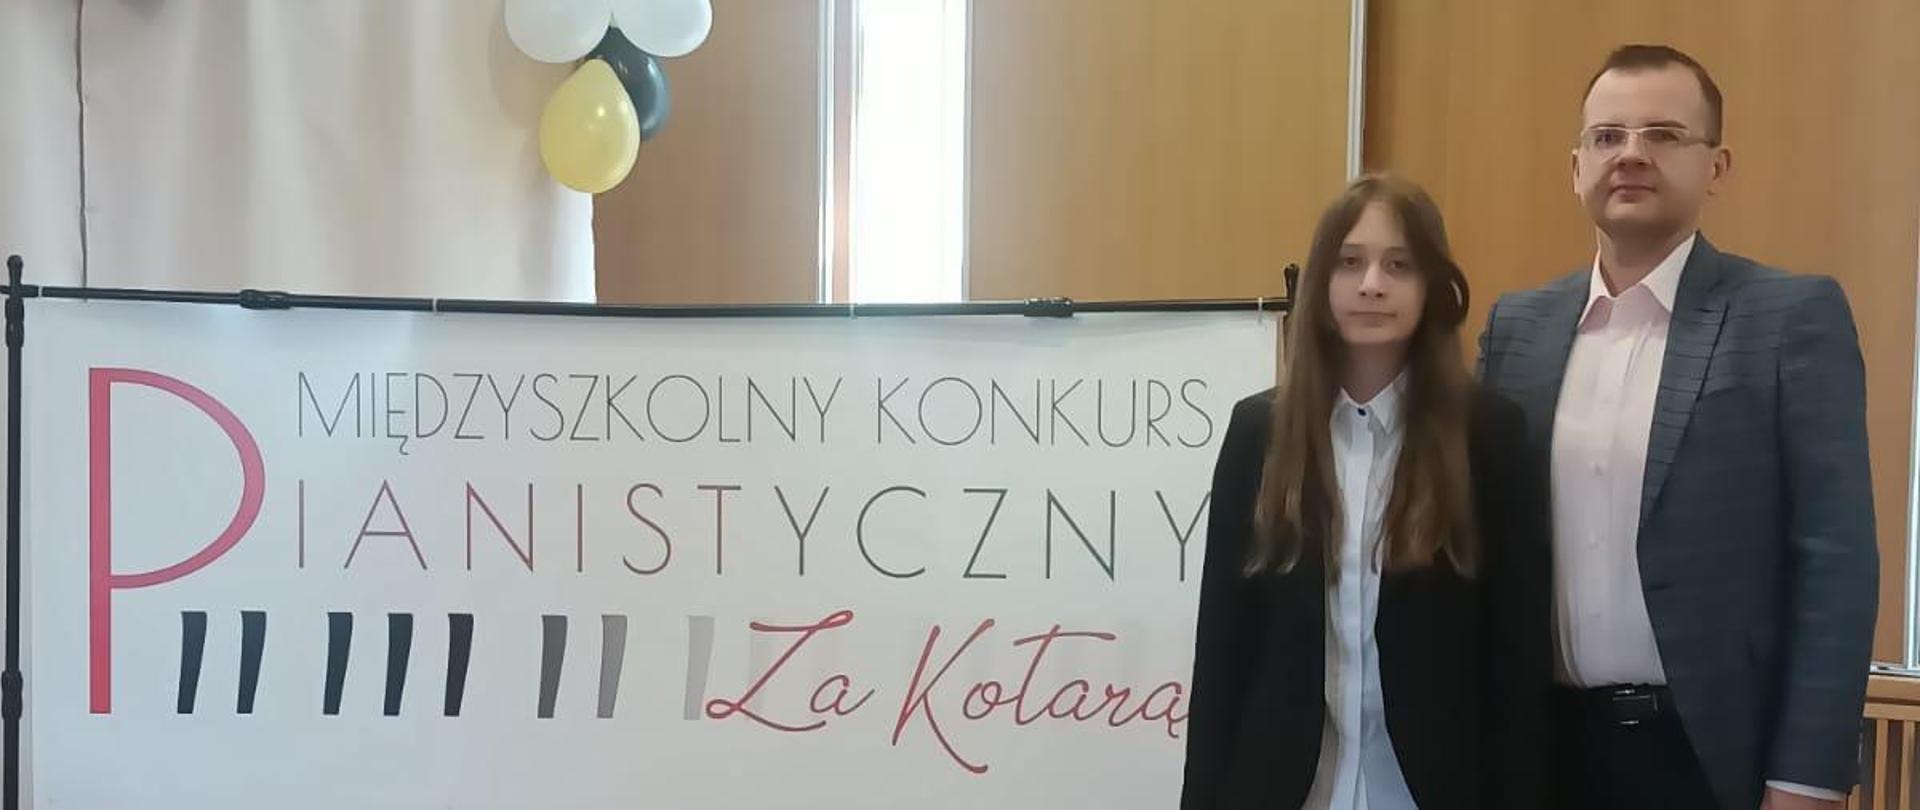  Zdjęcie przedstawia uczennicę V kl. C.6 naszej szkoły Karolinę Podporę wraz z nauczycielem Grzegorzem Derubą. W tle widać baner konkursowy